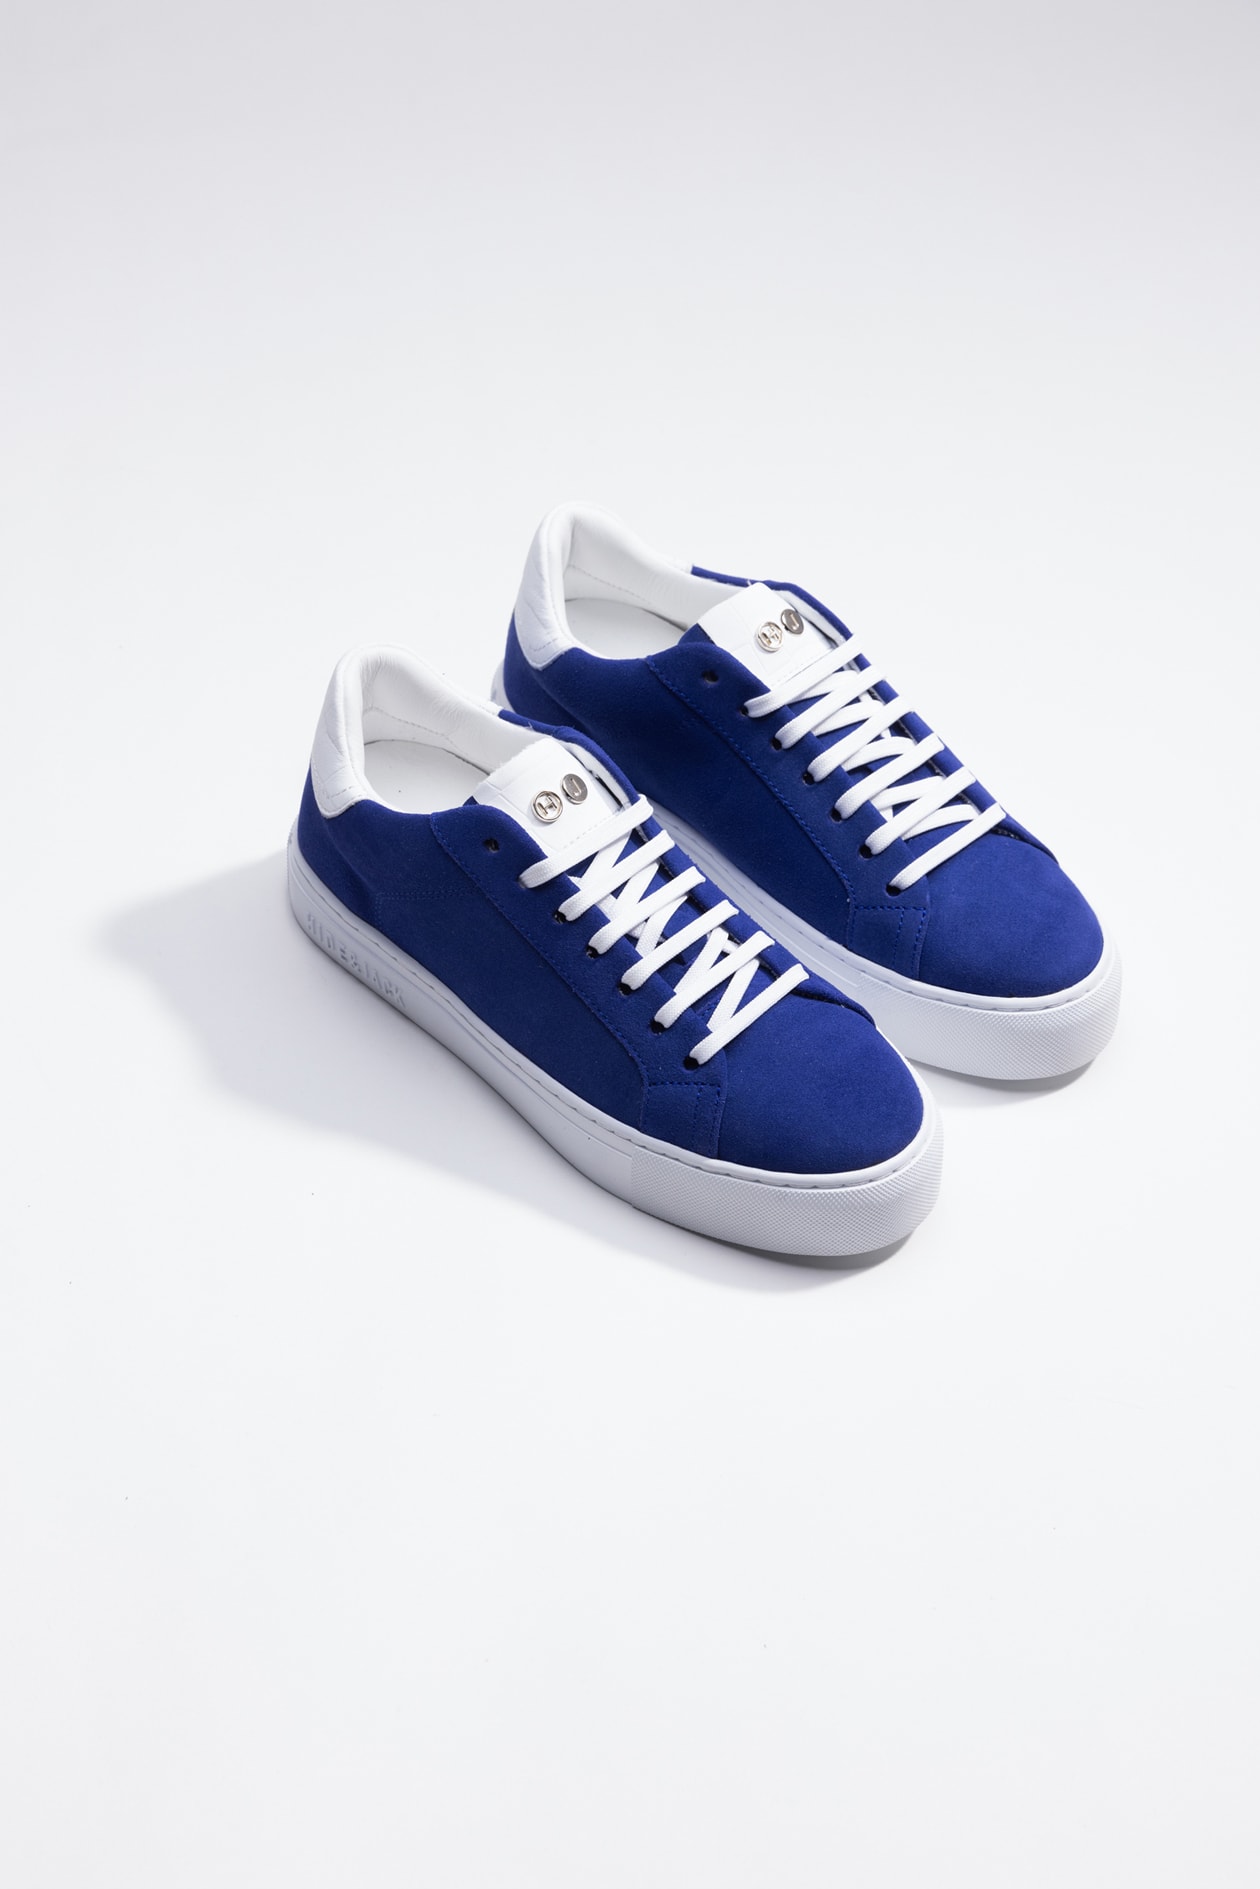 Hide & Jack Low Top Sneaker - Essence Oil Azure White